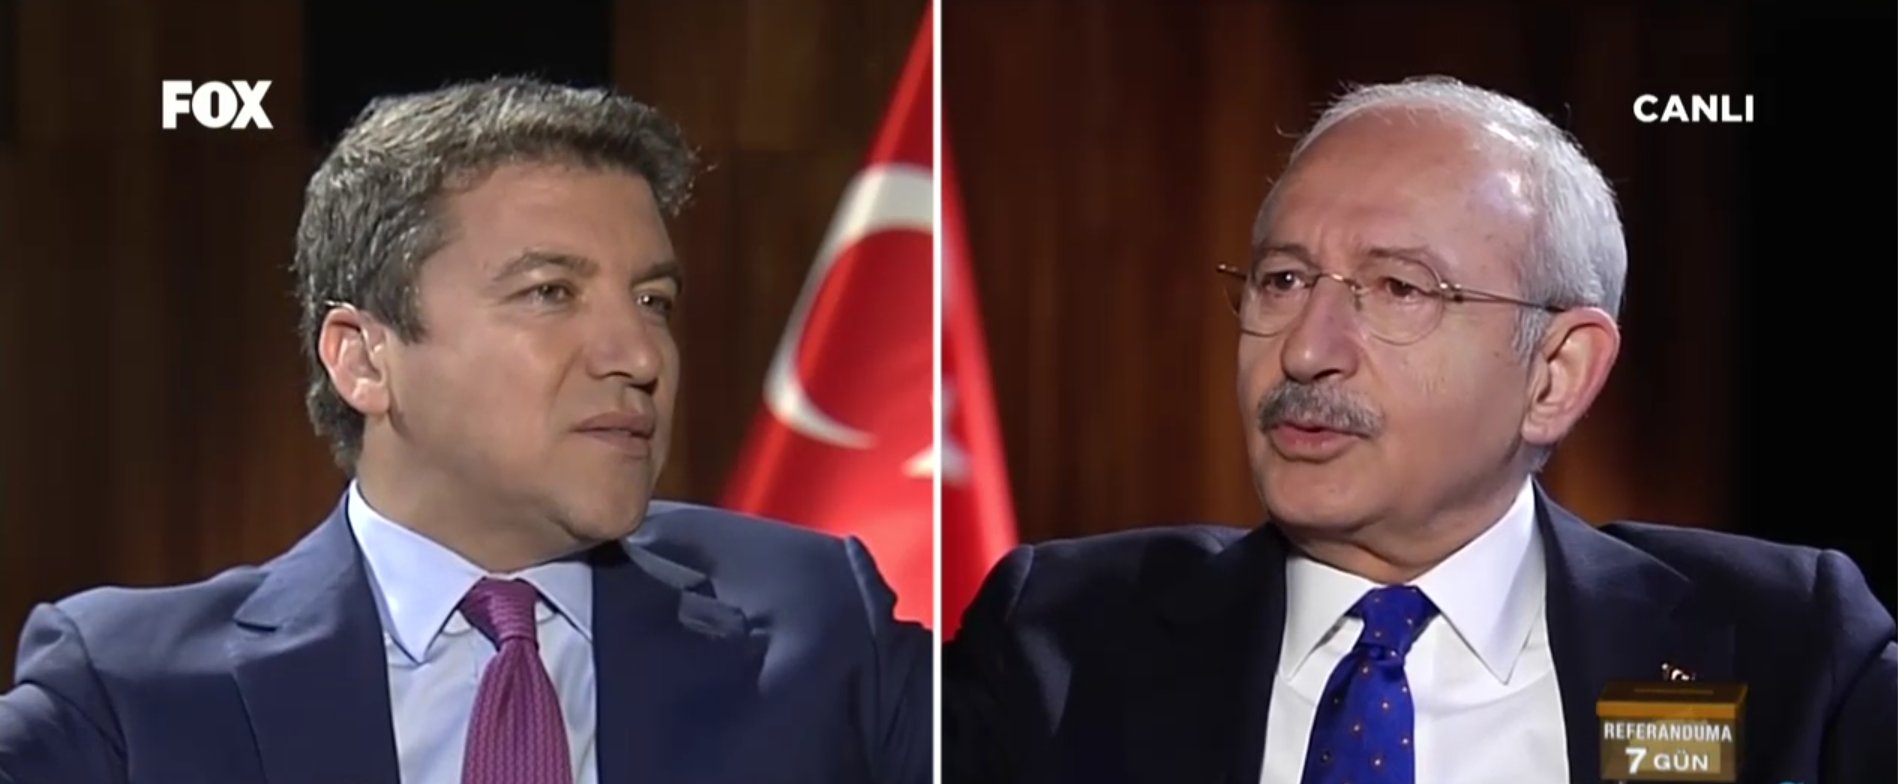 Kılıçdaroğlu CHP'yi tek başına iktidara taşımak istiyor